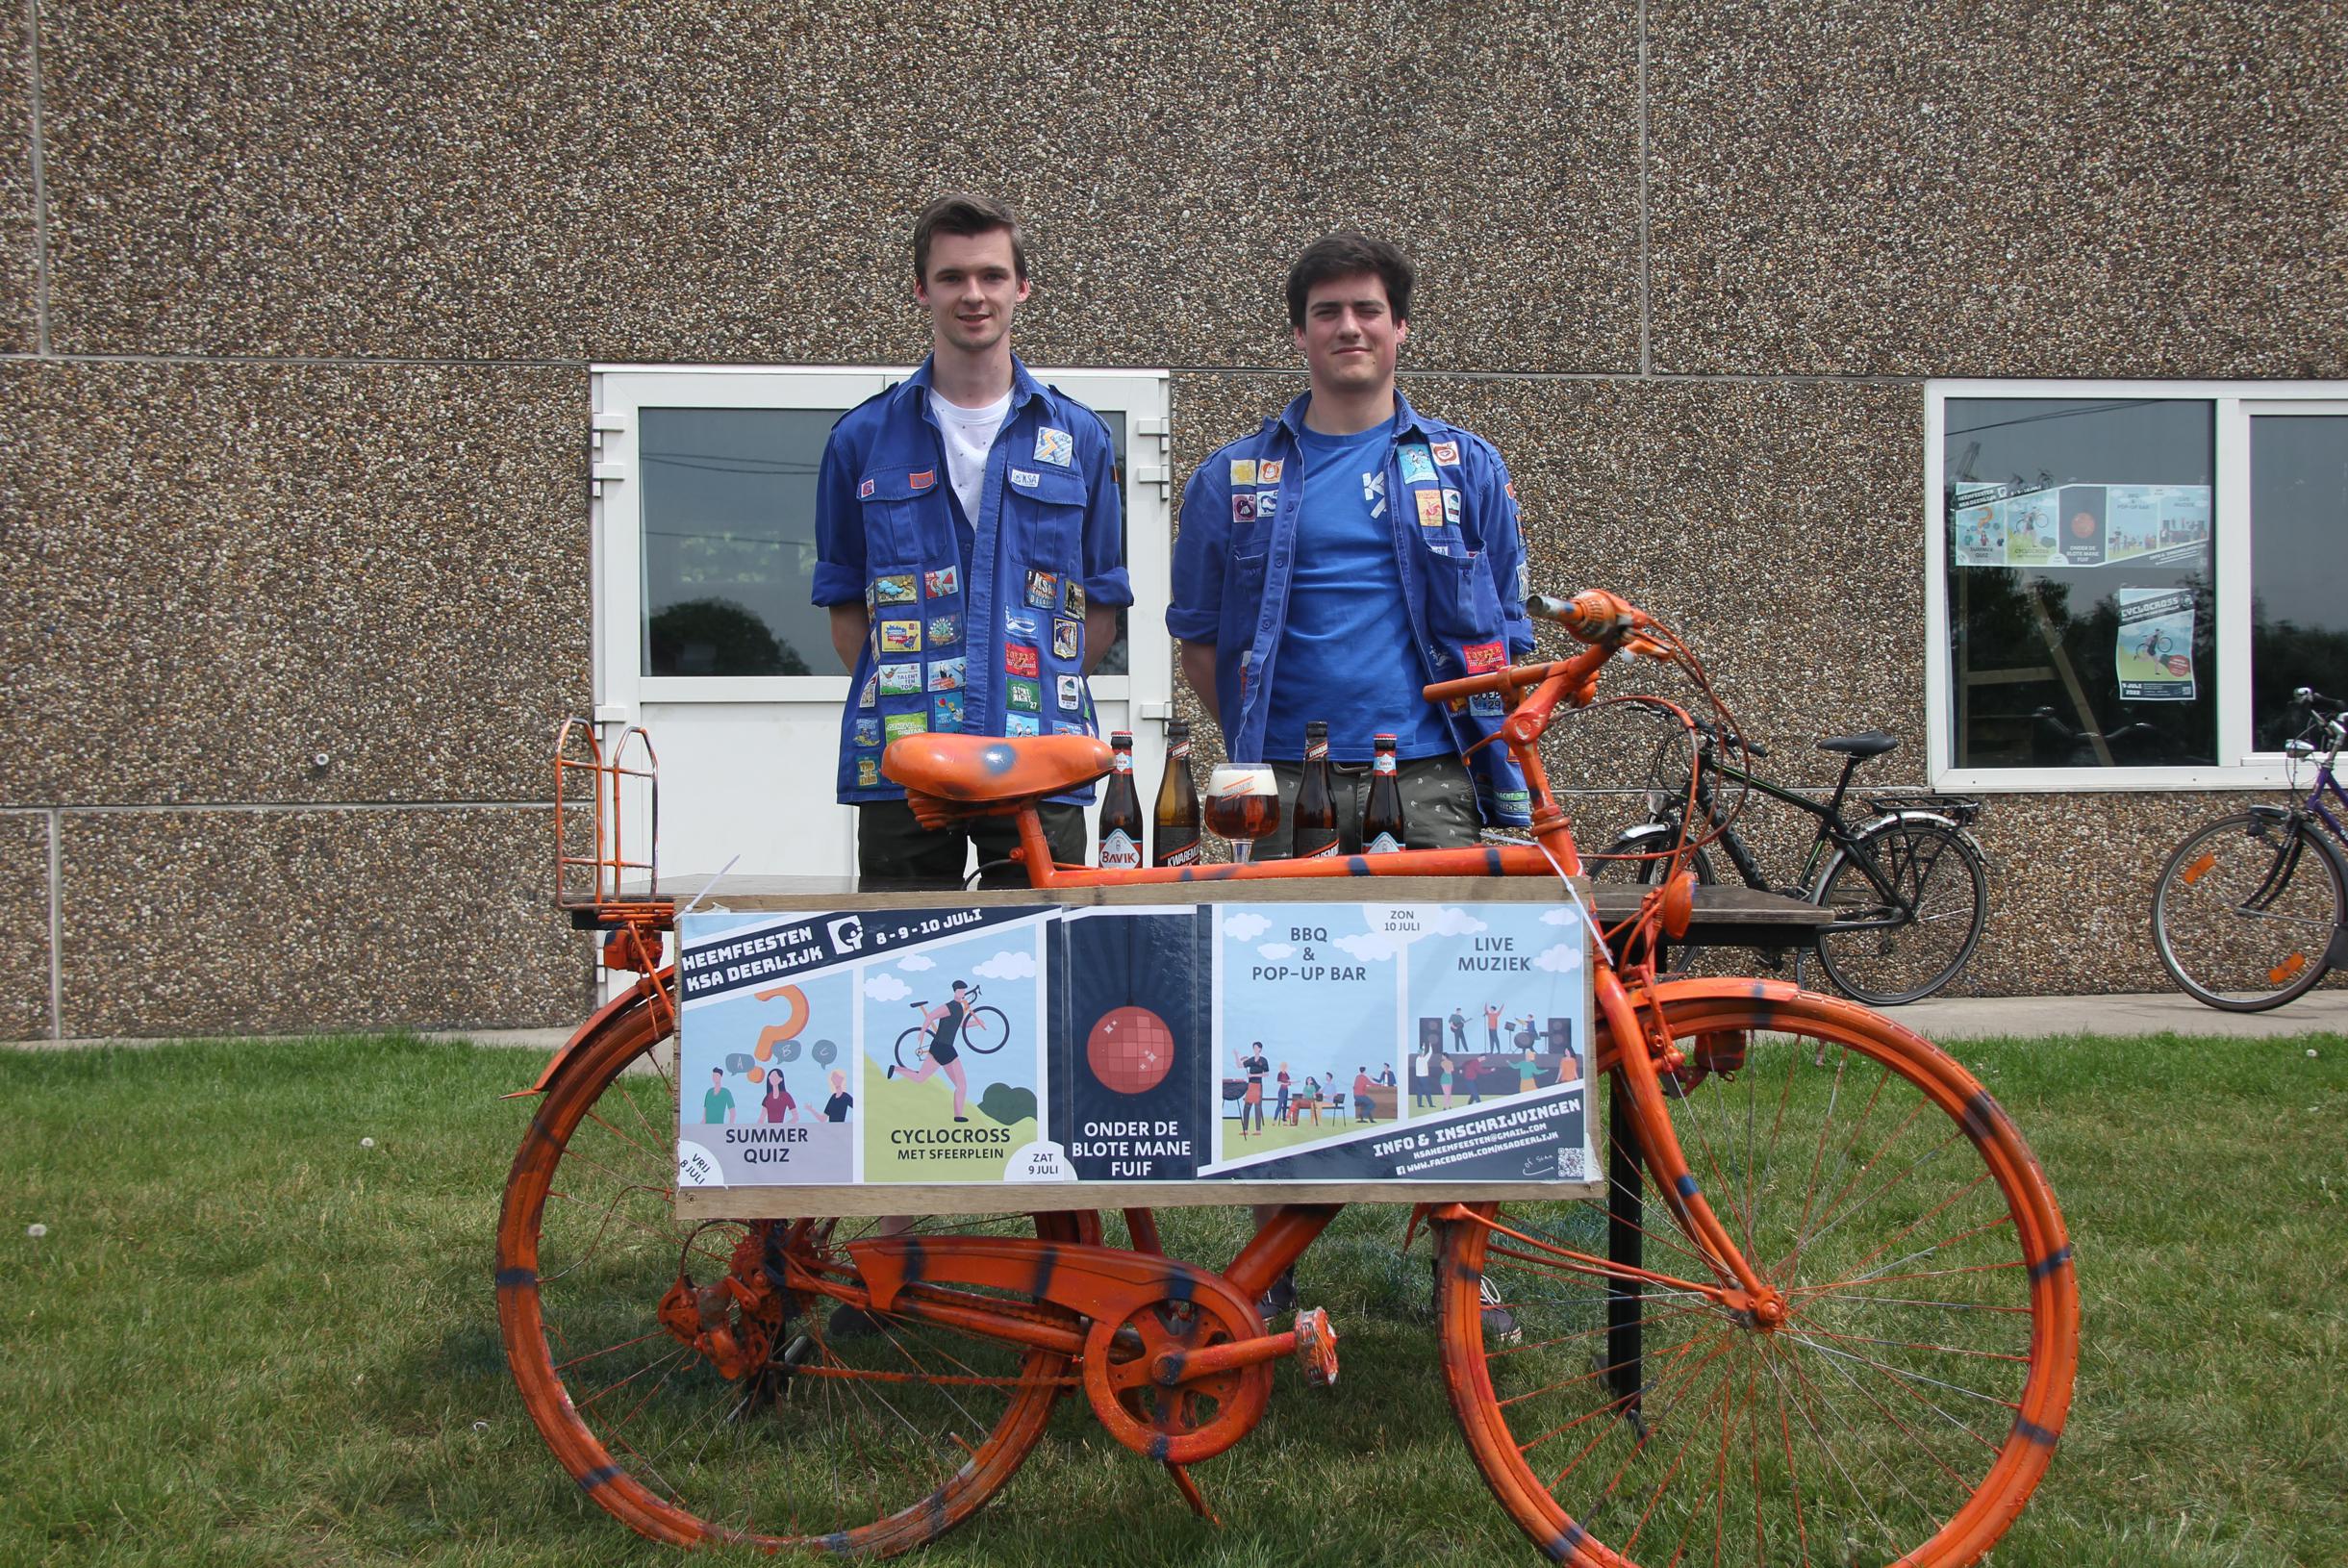 KSA Deerlijk bouwt eigen cyclocrossparcours tijdens heemfeesten: “Tijd vernieuwing” (Deerlijk) | Het Nieuwsblad Mobile